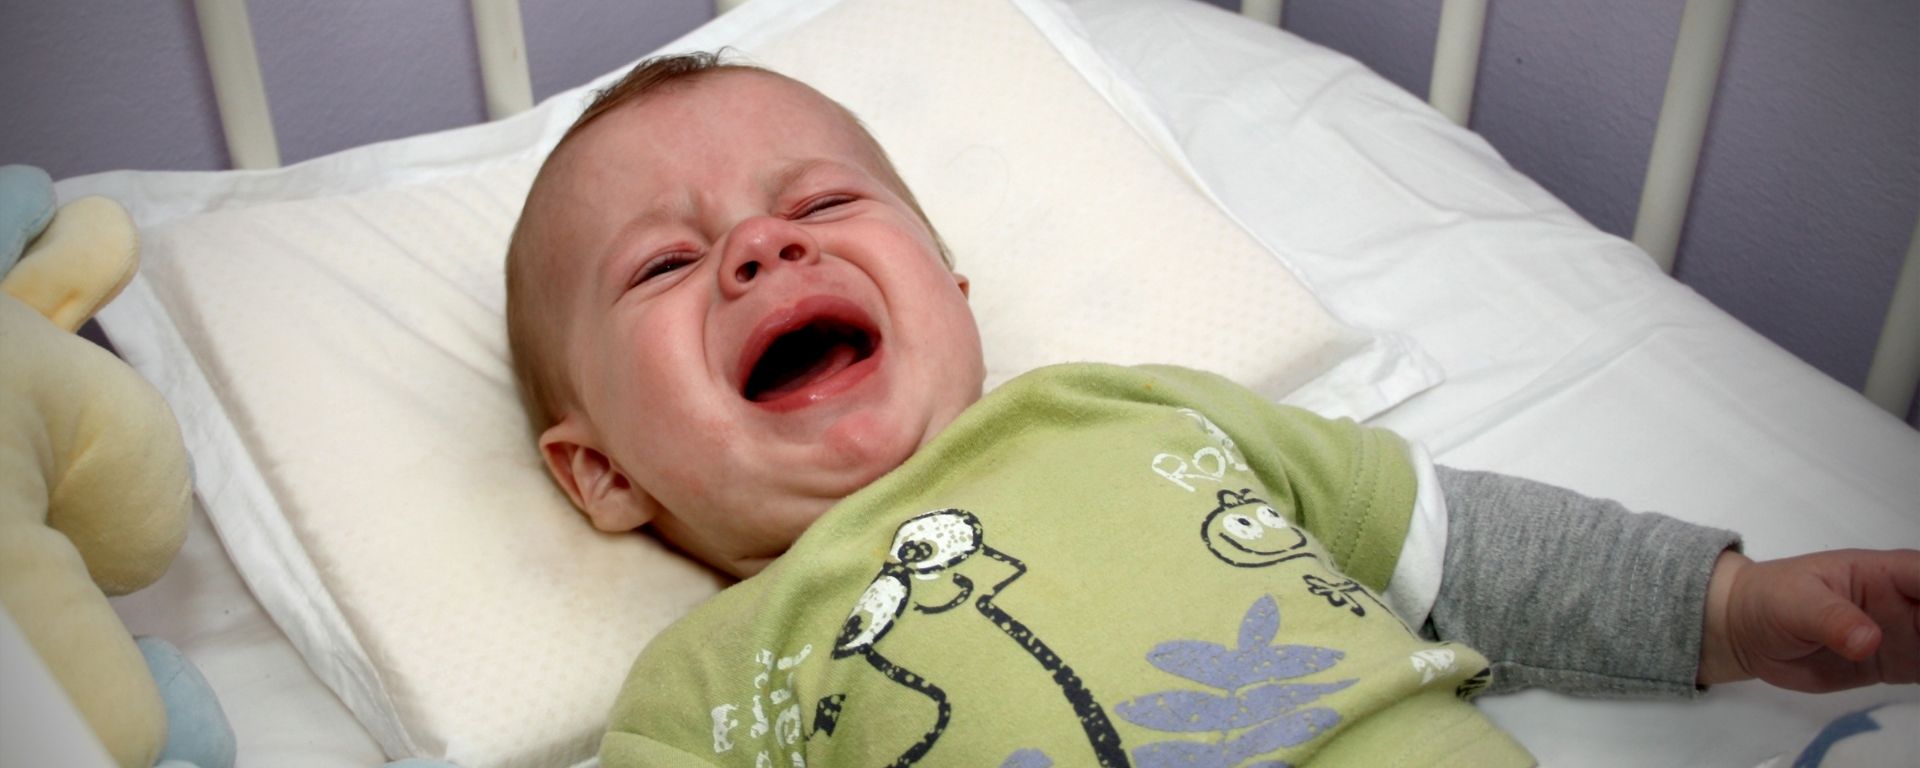 Esitellä 45+ imagen vauva flunssa pulauttelu